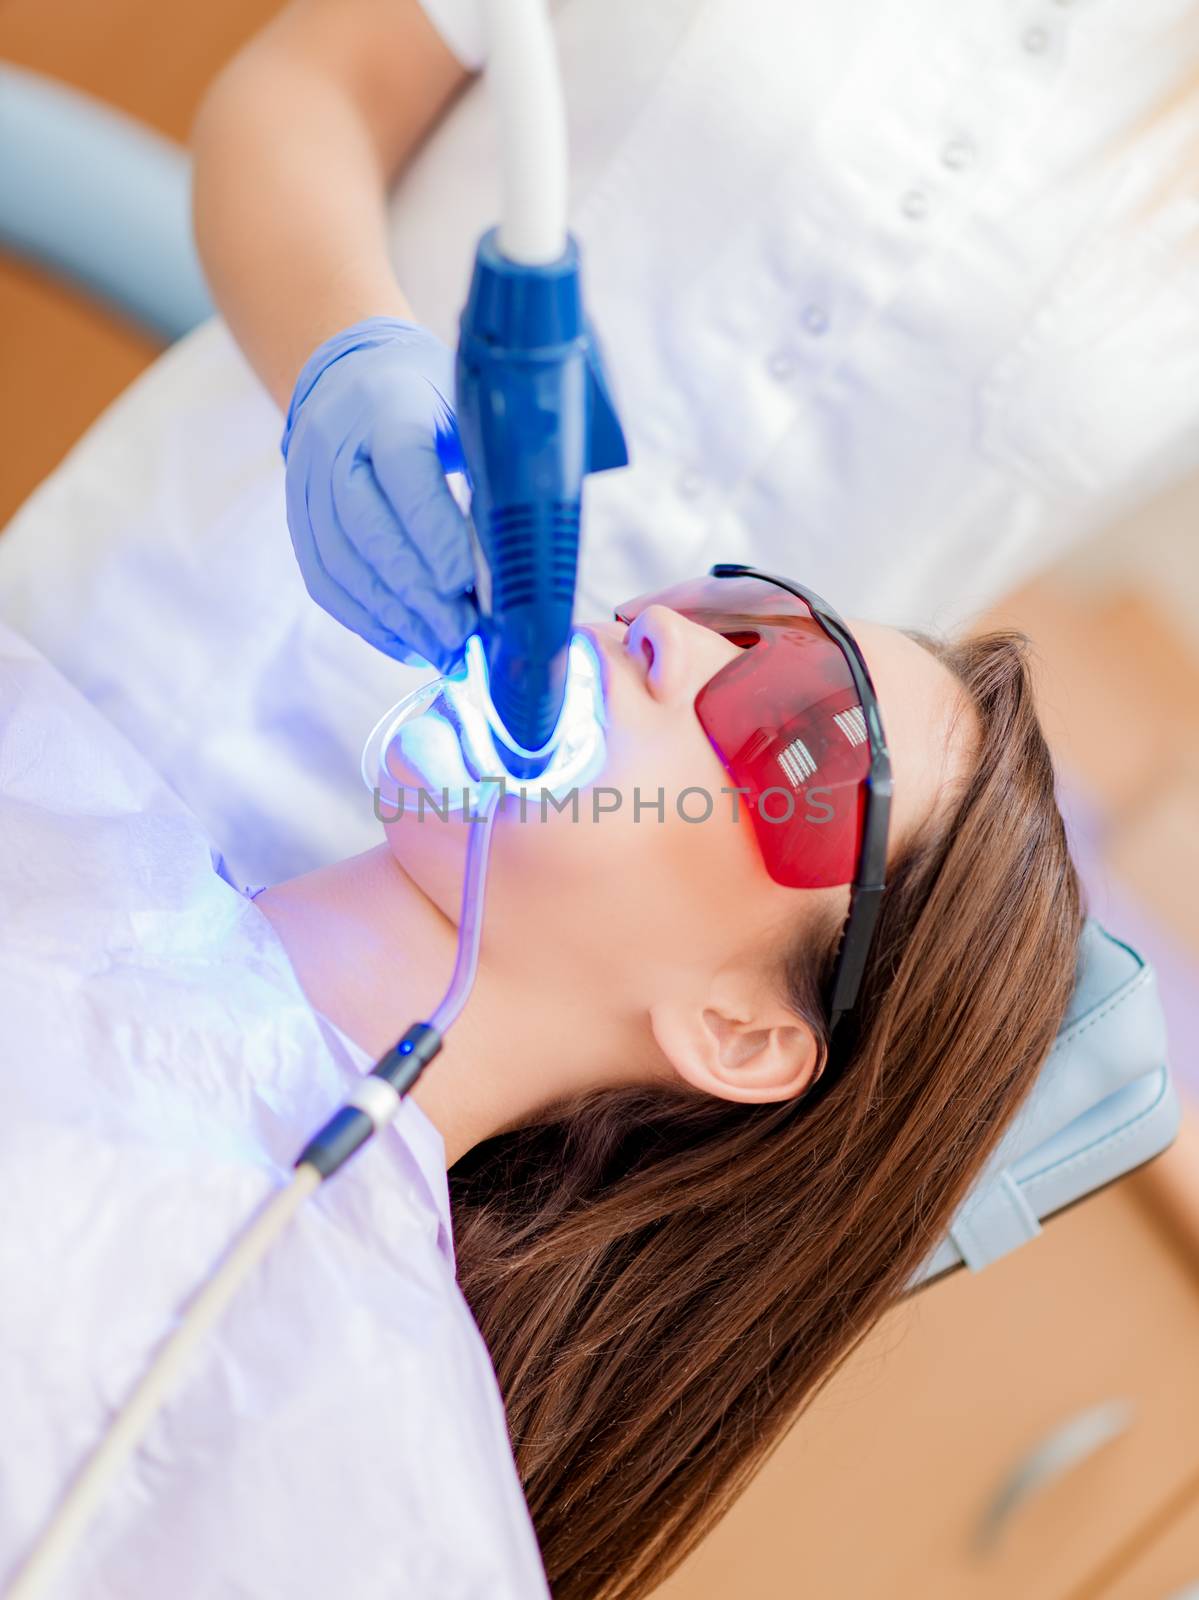 Laser Teeth Whitening by MilanMarkovic78